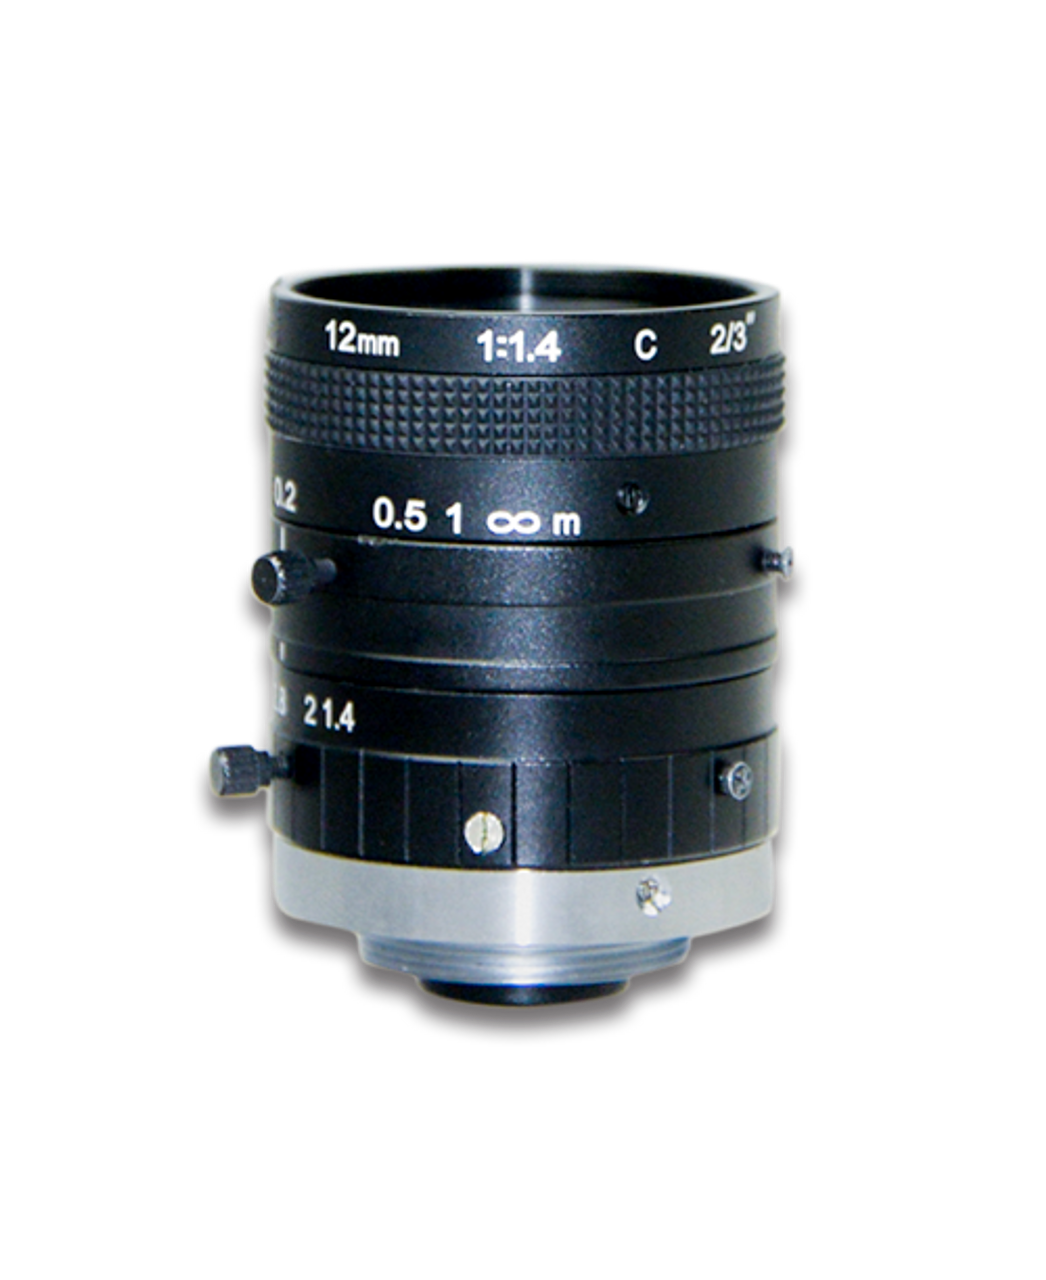 12mm 2/3" 2MP C-Mount Lens